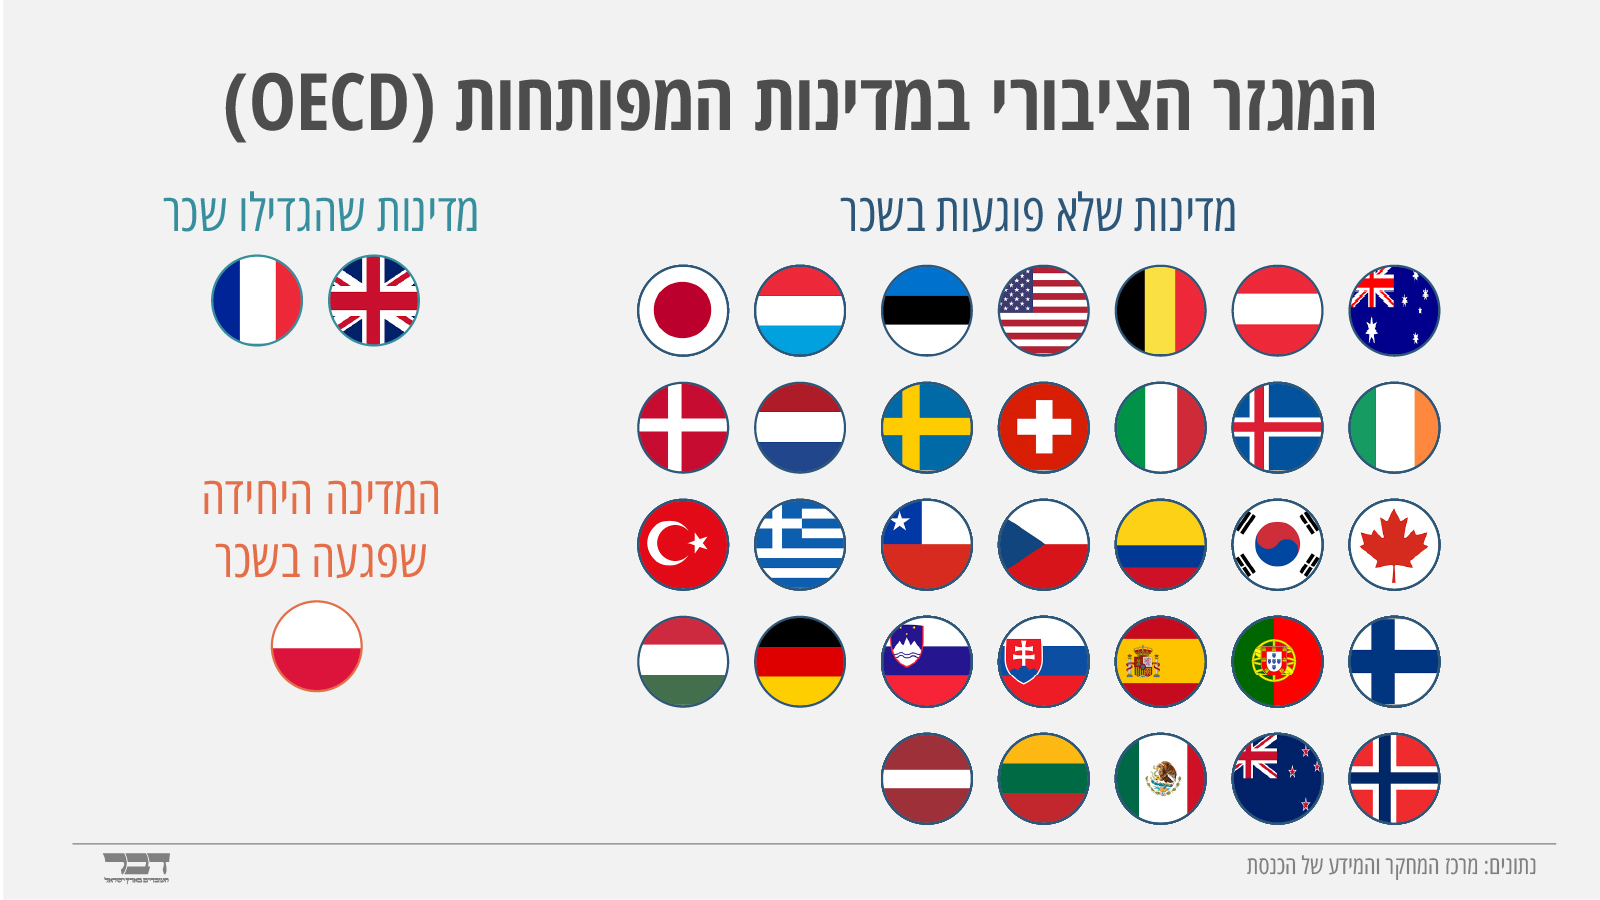 קיצוצי שכר לפי מדינות (נתונים: מרכז המחקר והמידע של הכנסת, גרפיקה: אידאה)